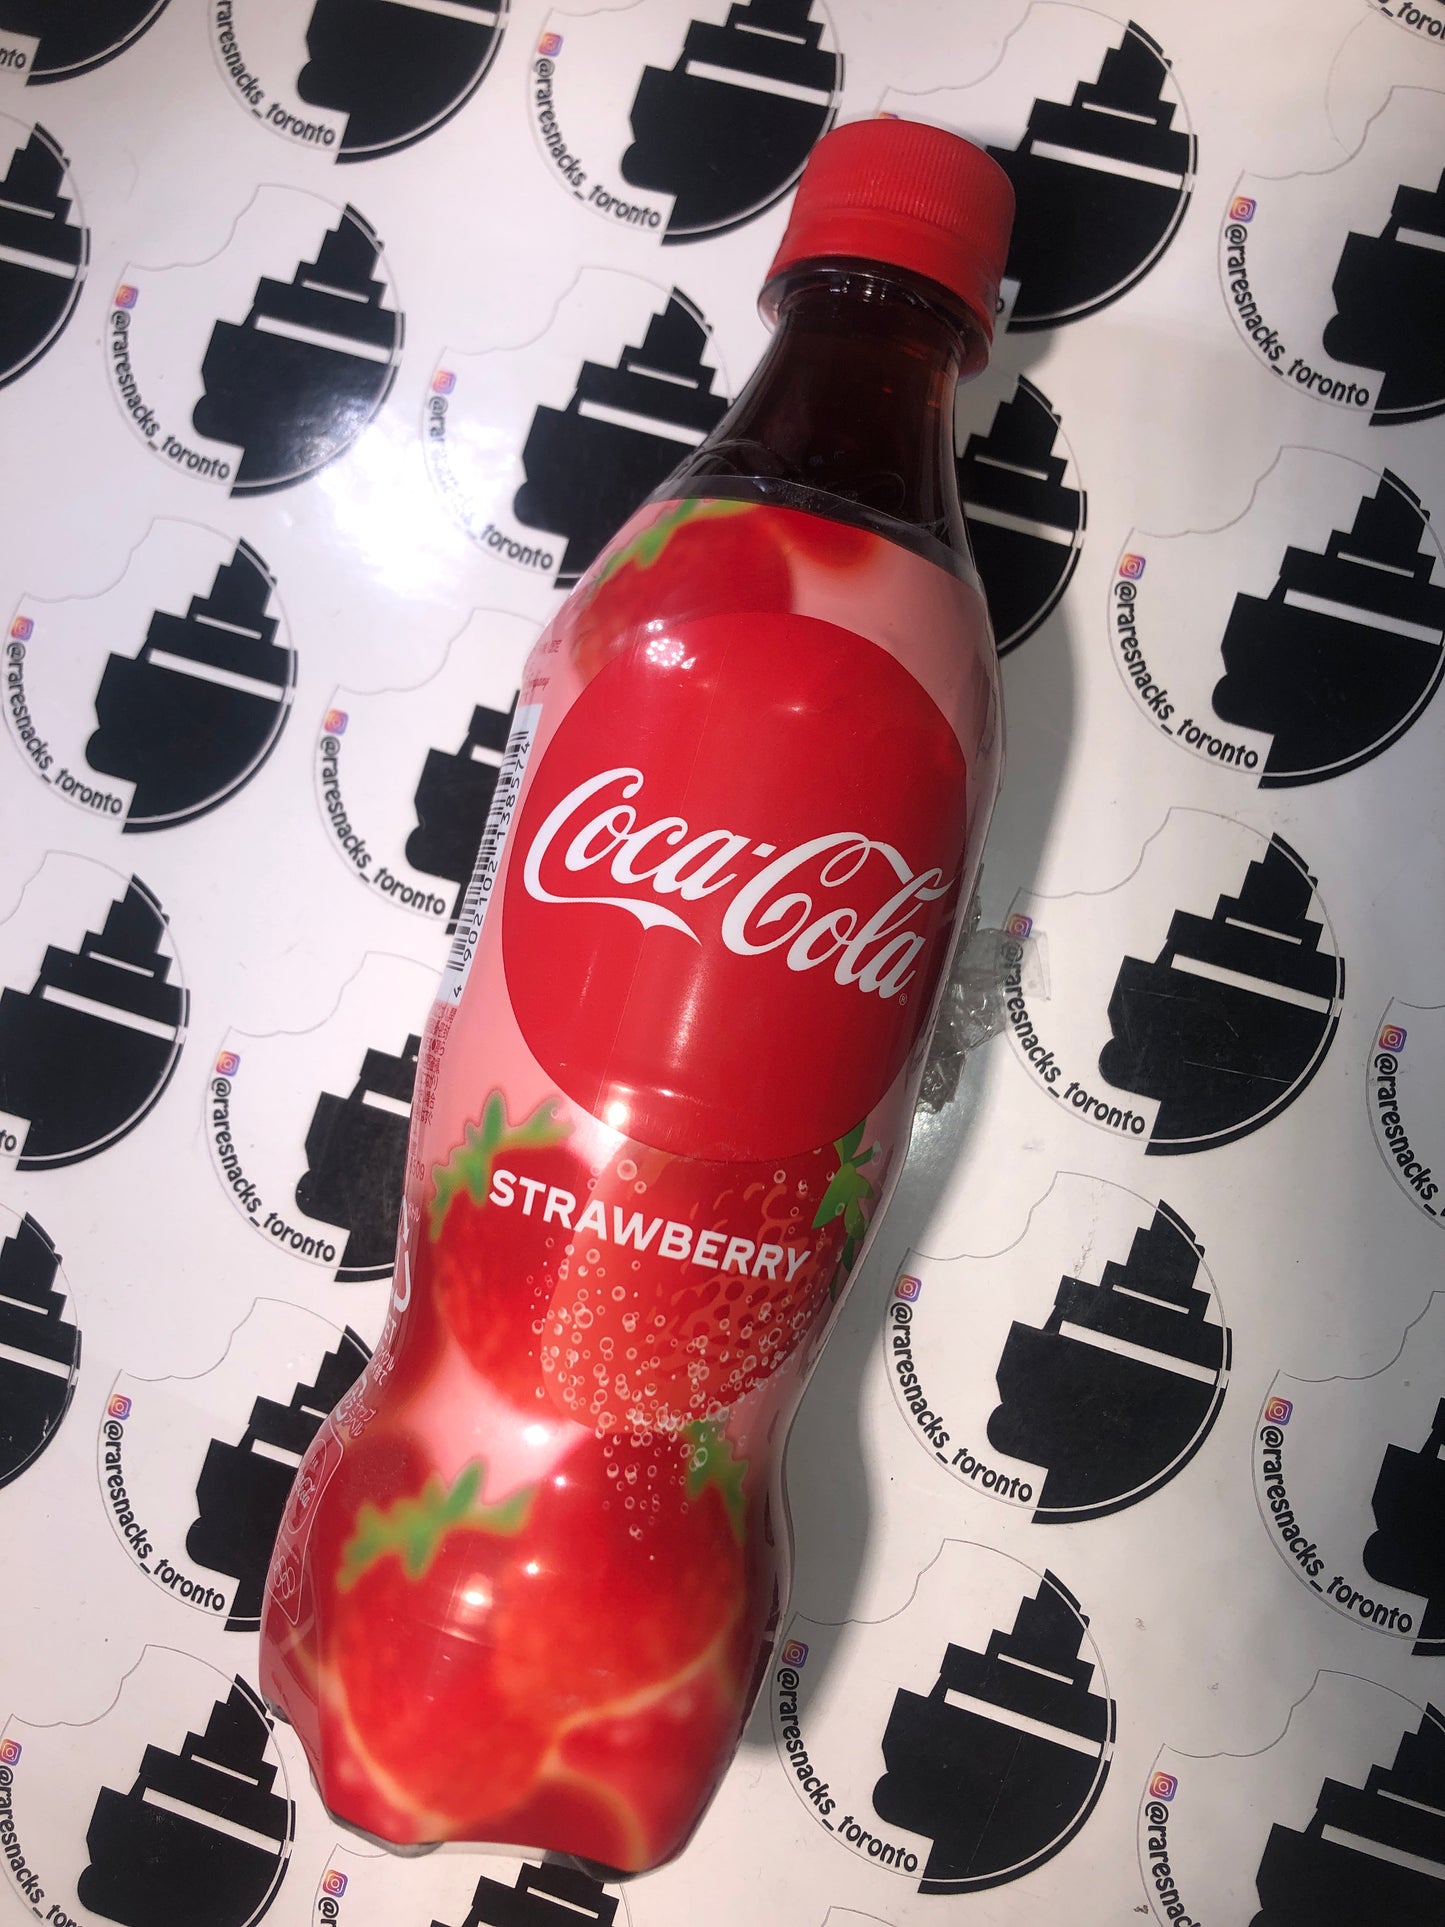 Coca-cola Strawberry